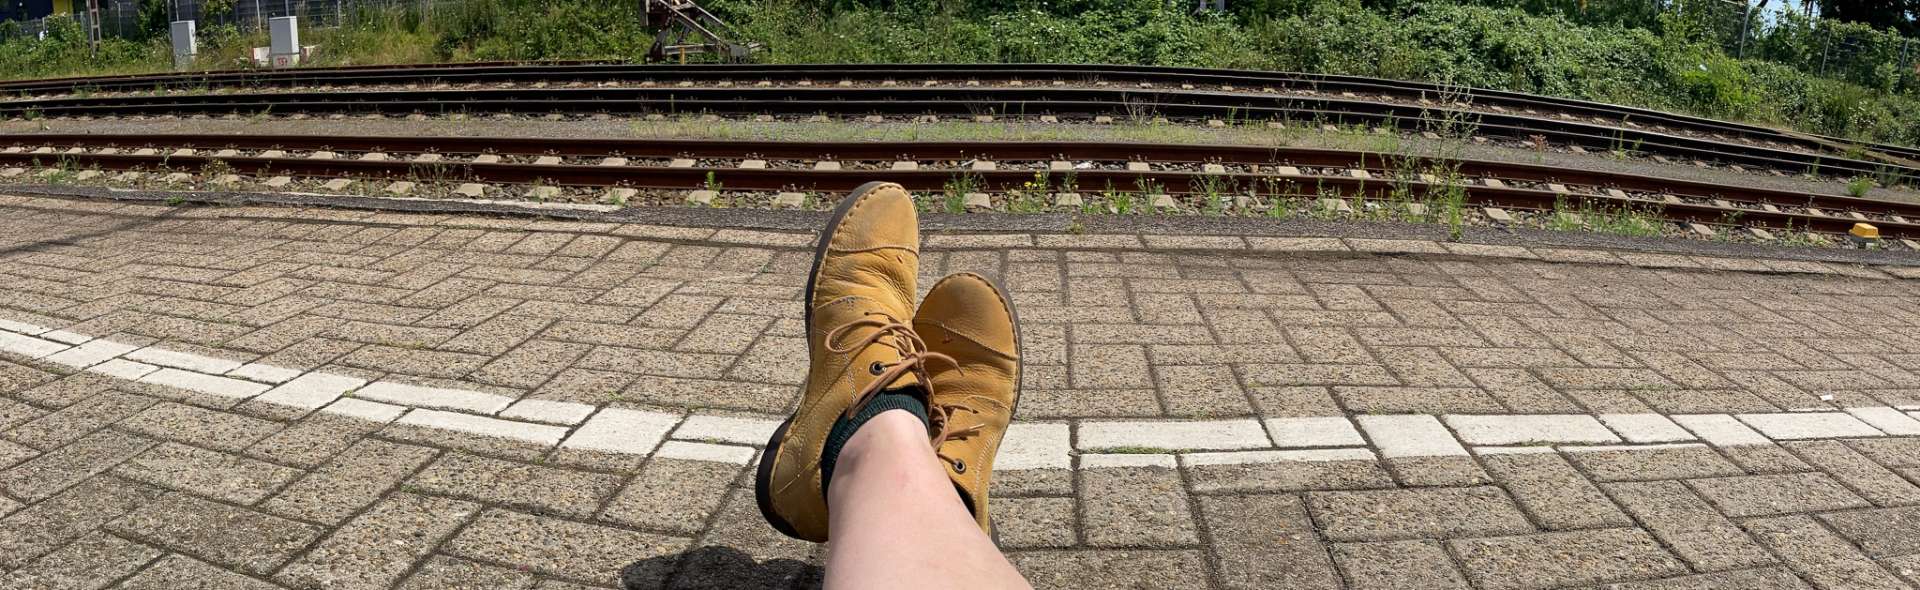 Zwei Füße In Schuhen Auf Einem Bahnsteig, Im Huntergrund Sieht Man Die Bahngleise